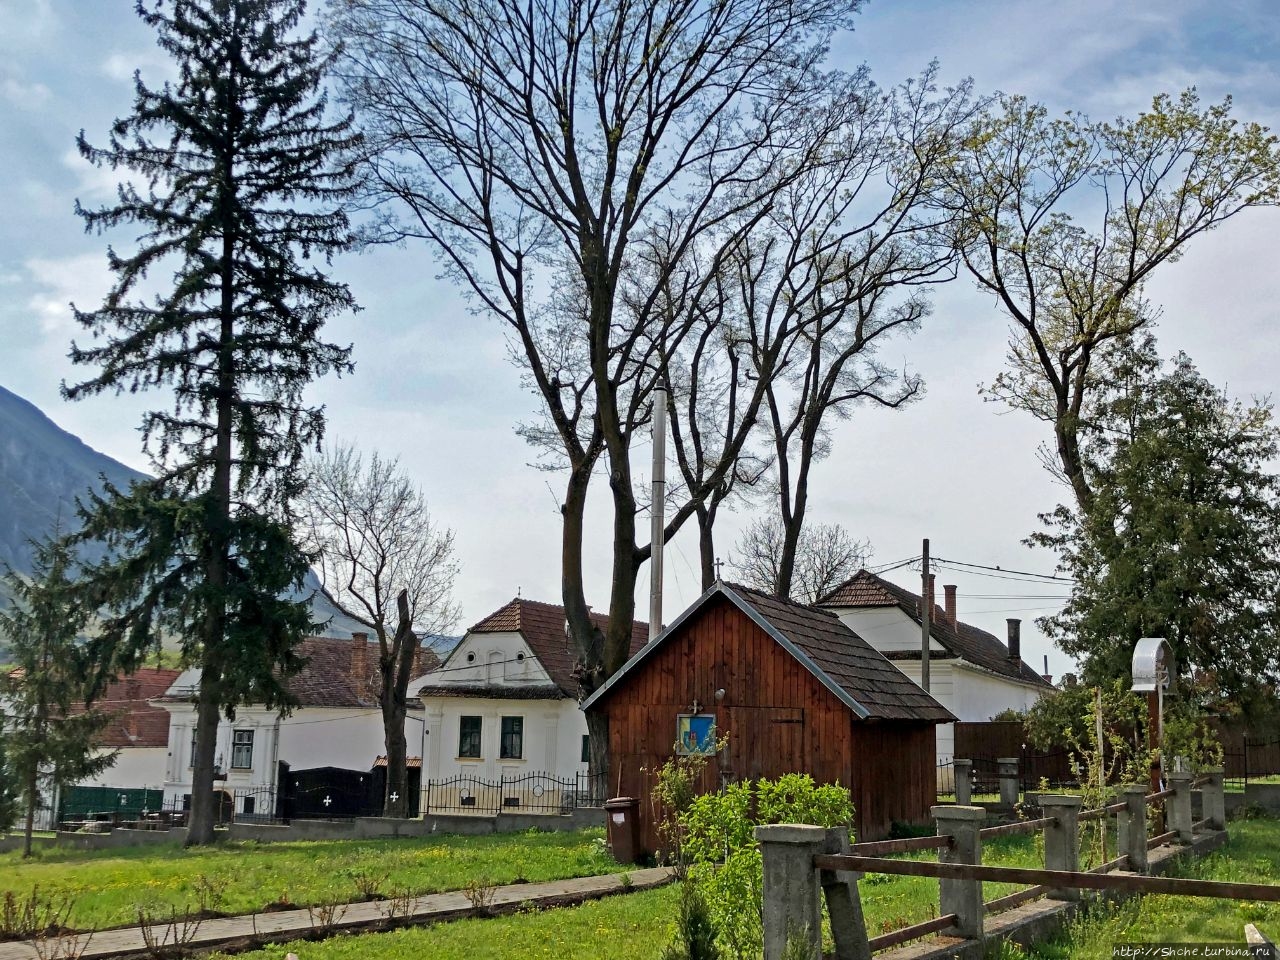 Старое село Риметея Риметя, Румыния